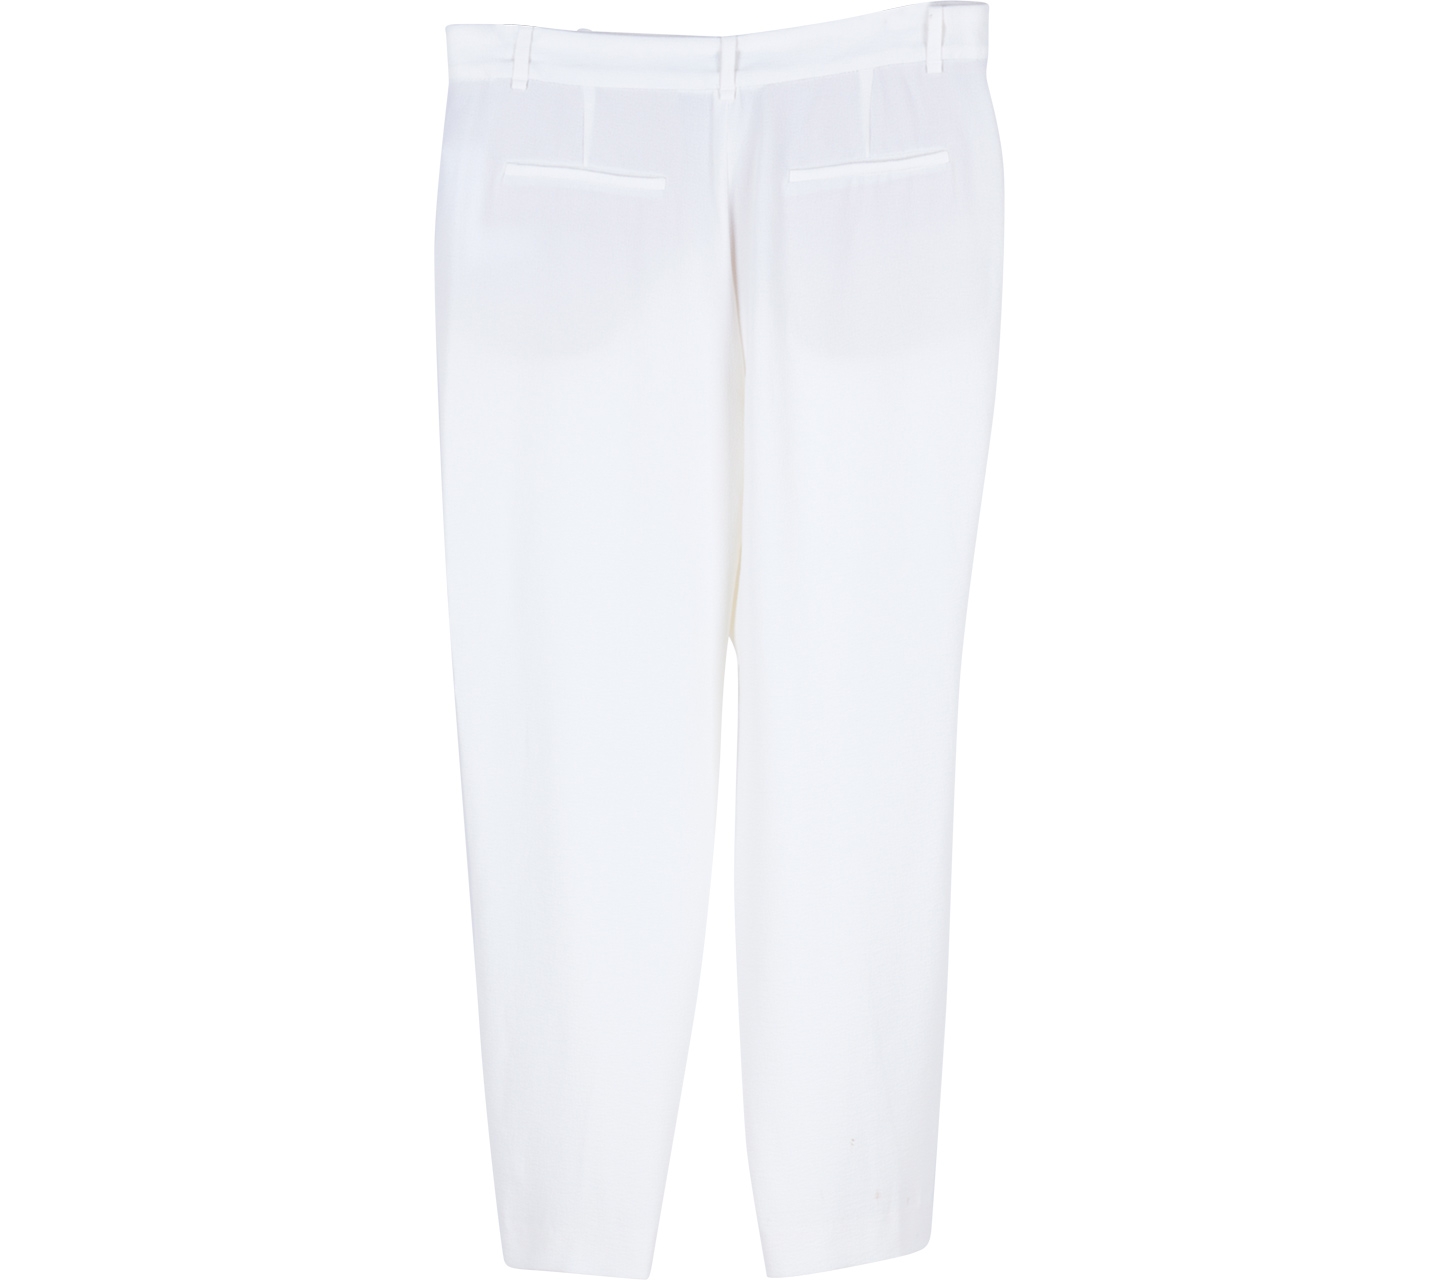 Zara White Textured Pants